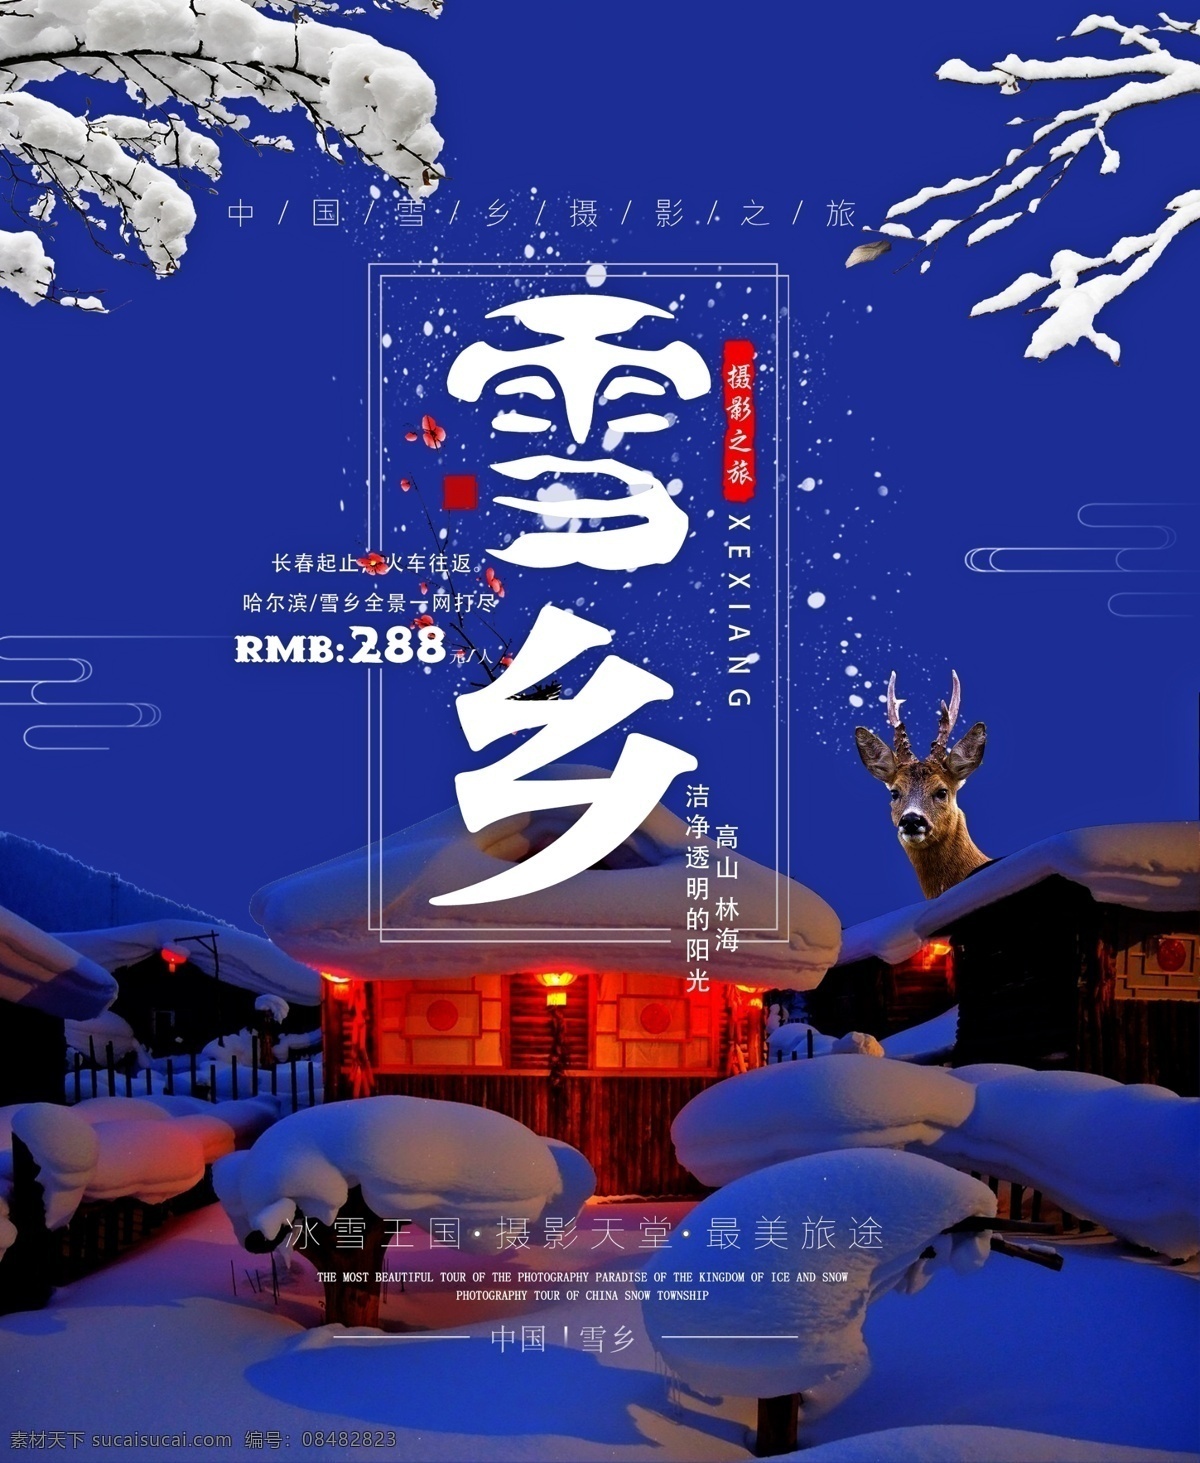 中国 雪乡 直 客 宣传海报 冬季旅游 异域风情